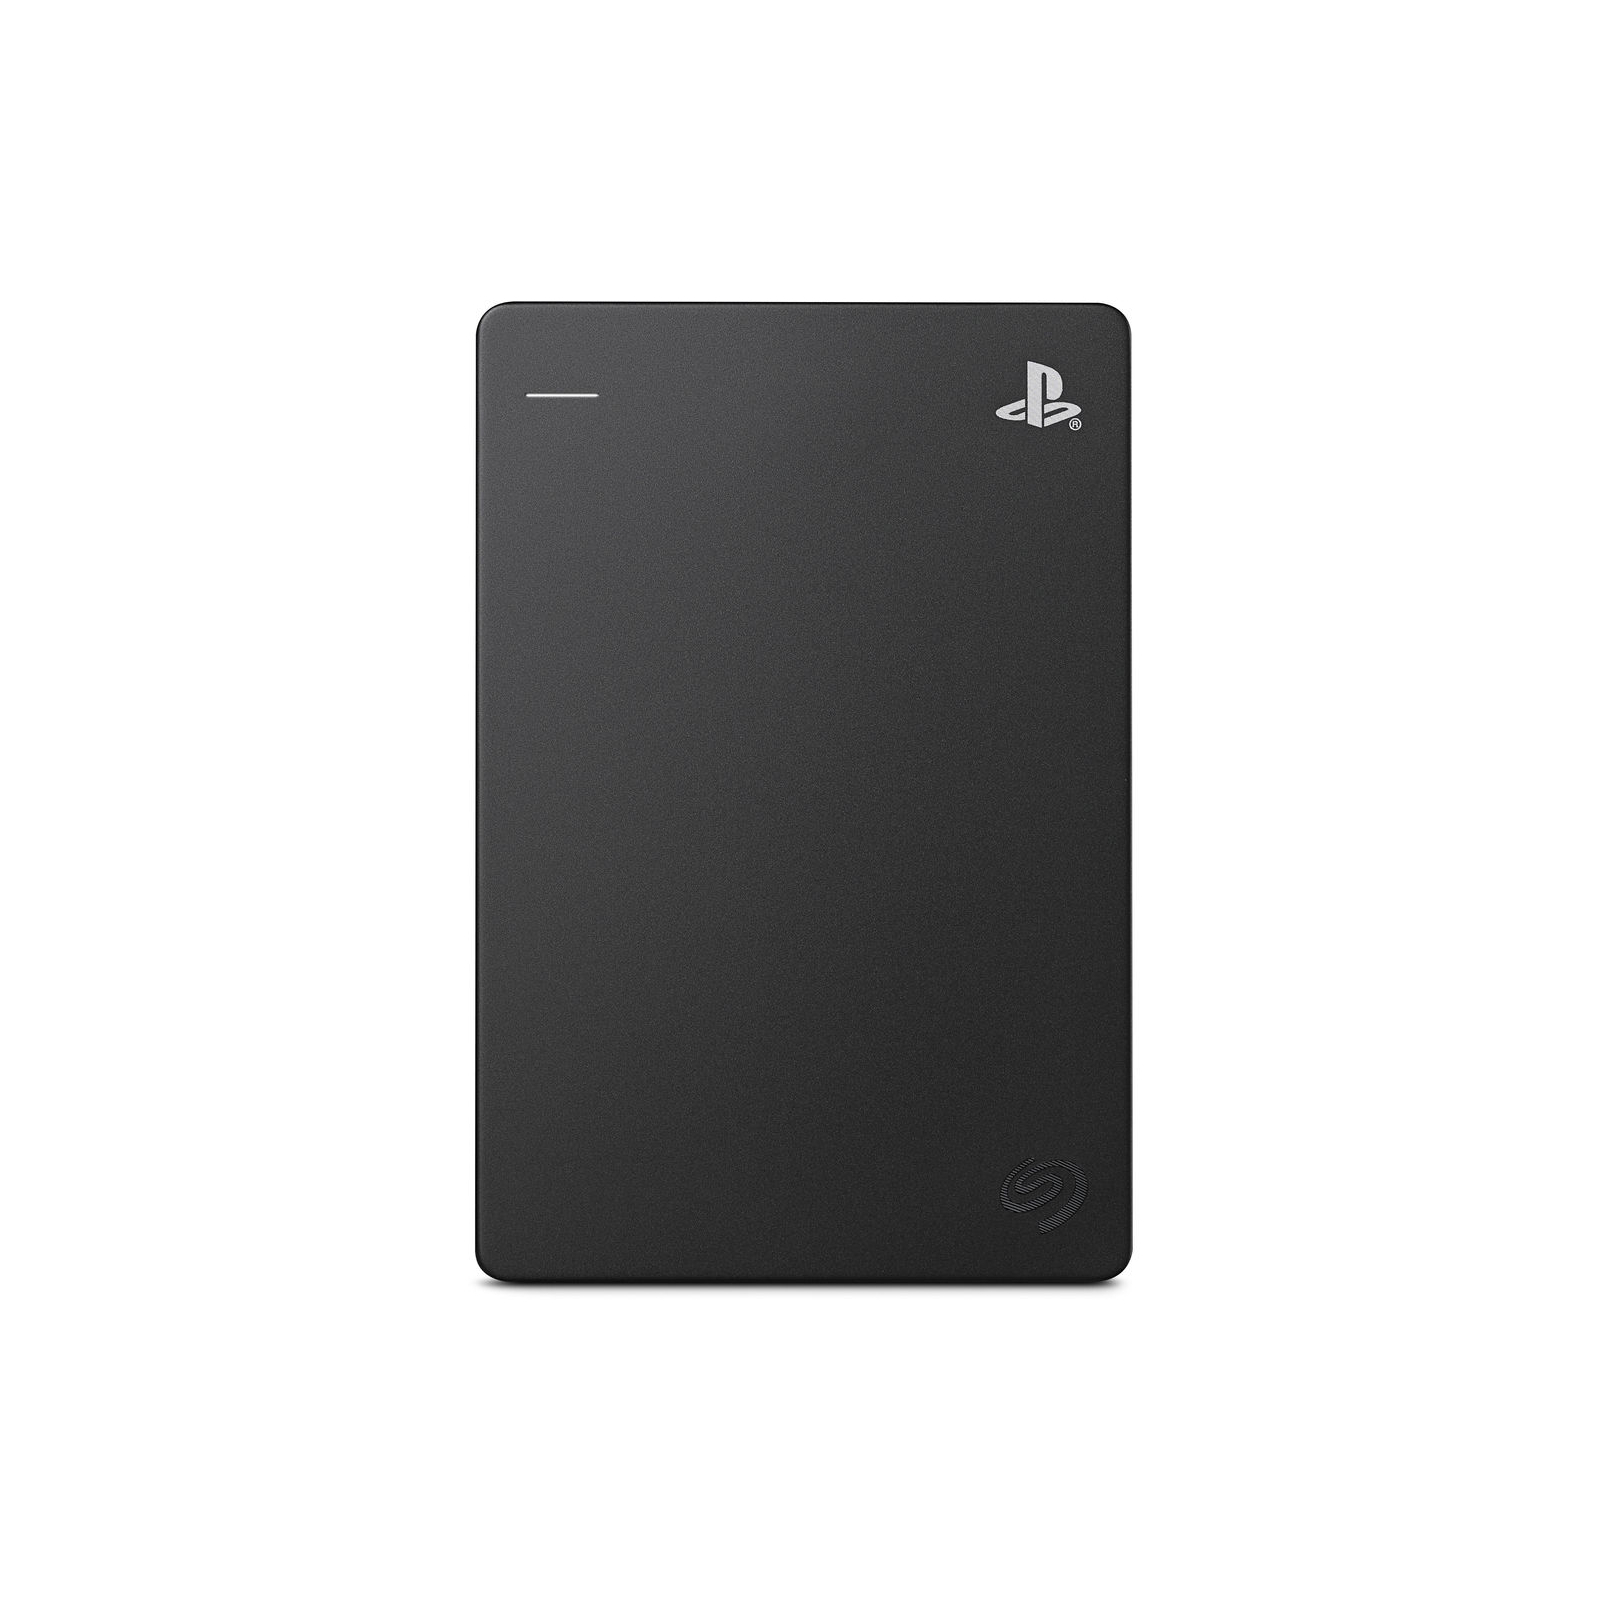 Зовнішній жорсткий диск 2.5" 2TB Game Drive for PlayStation 4 Seagate (STGD2000202) зображення 2